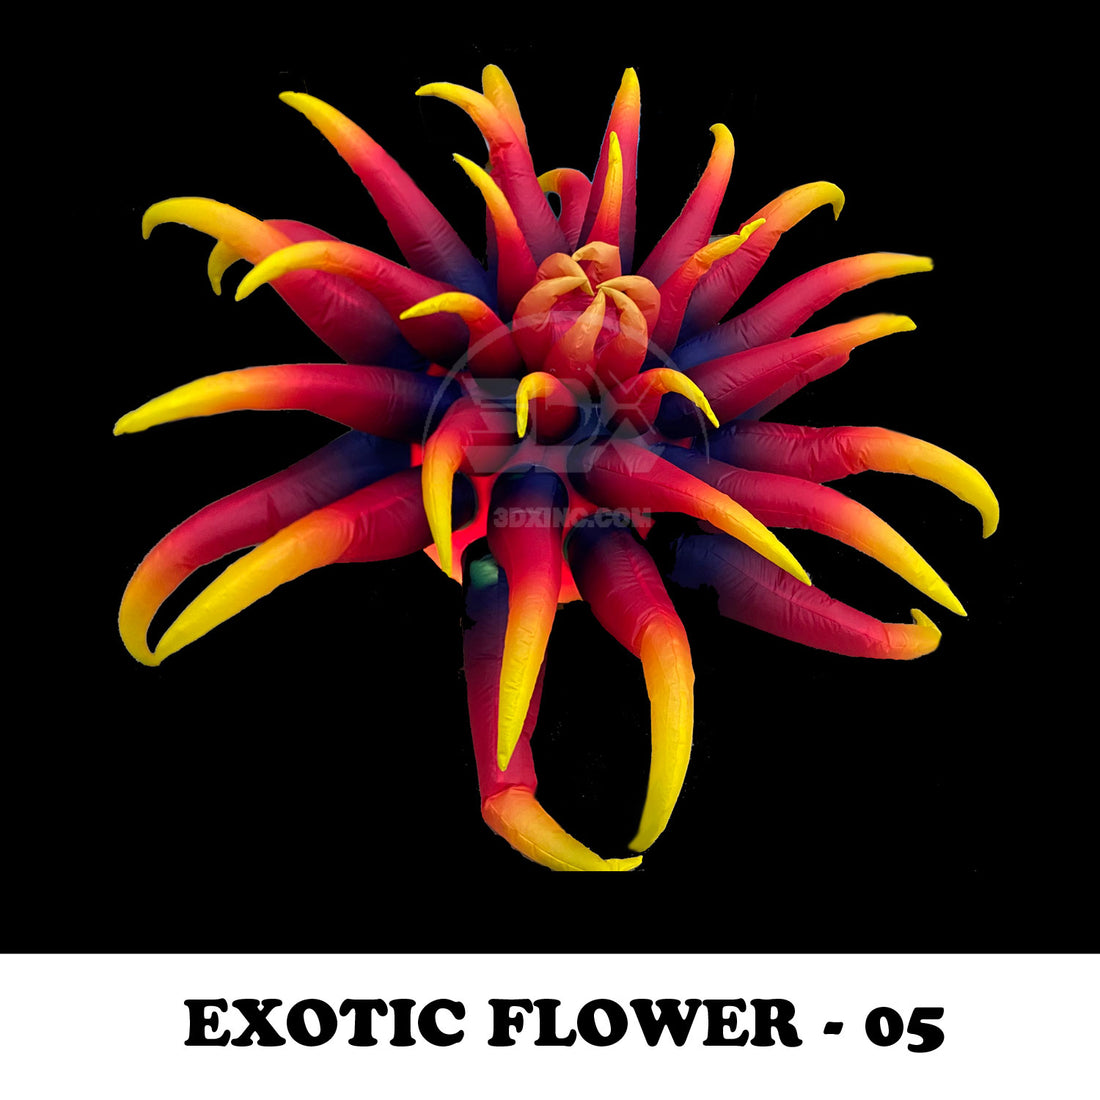 EXOTIC FLOWER - 05